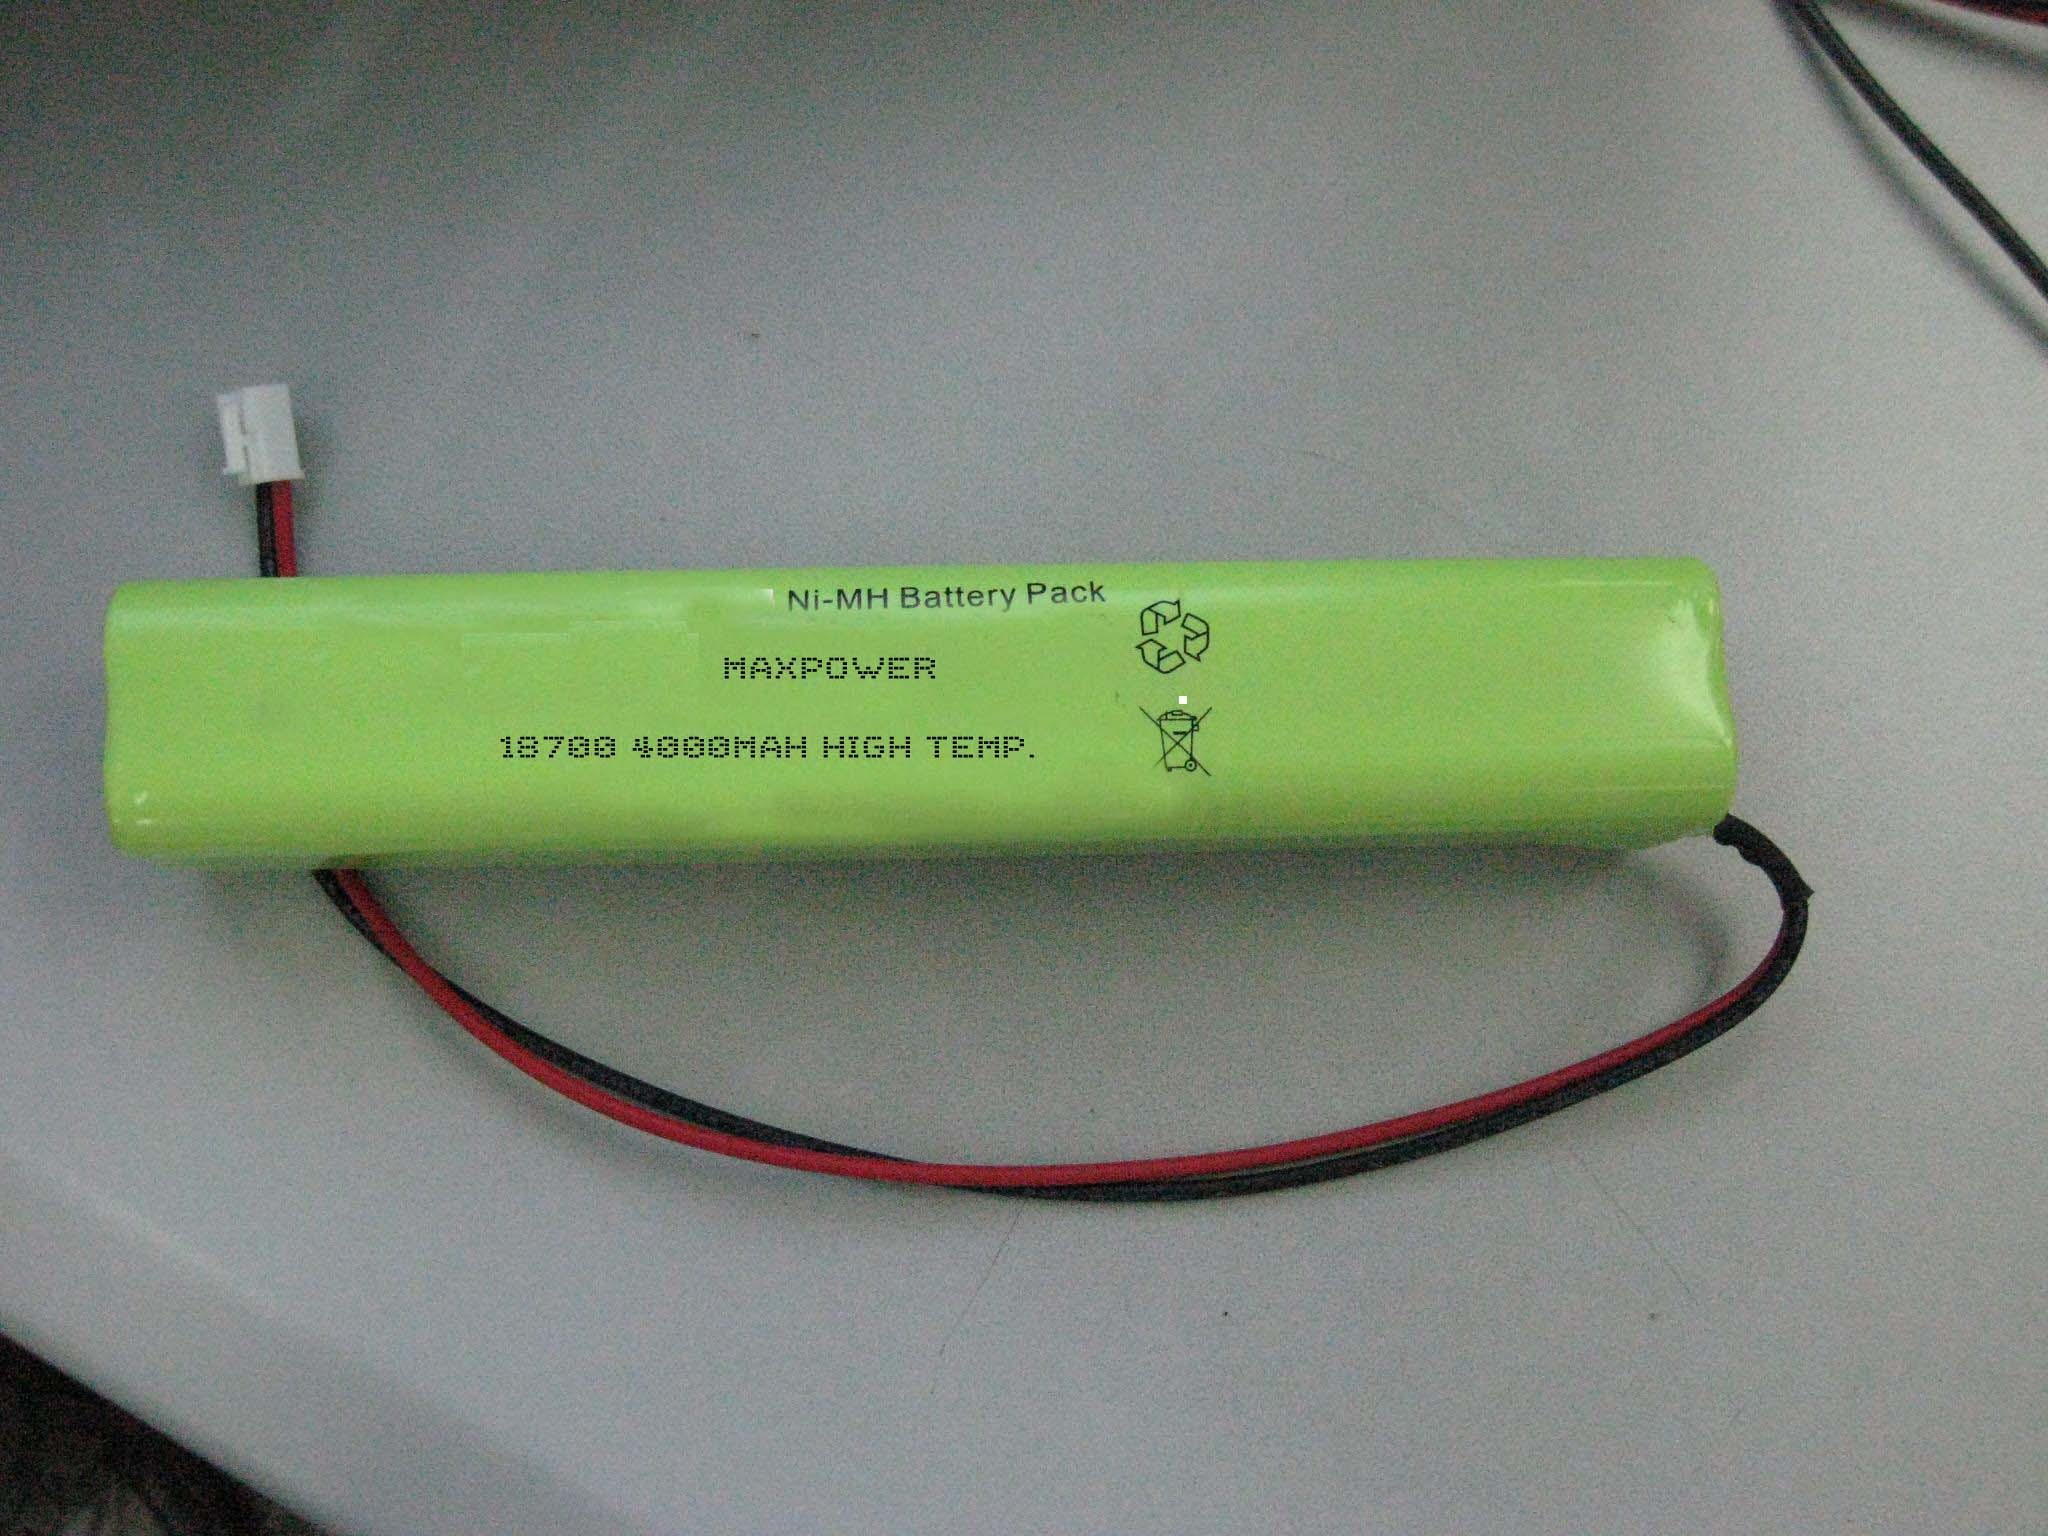 Pin chiếu sáng khẩn cấp nhiệt độ cao NIMH 18700 4000mAh 4.8V